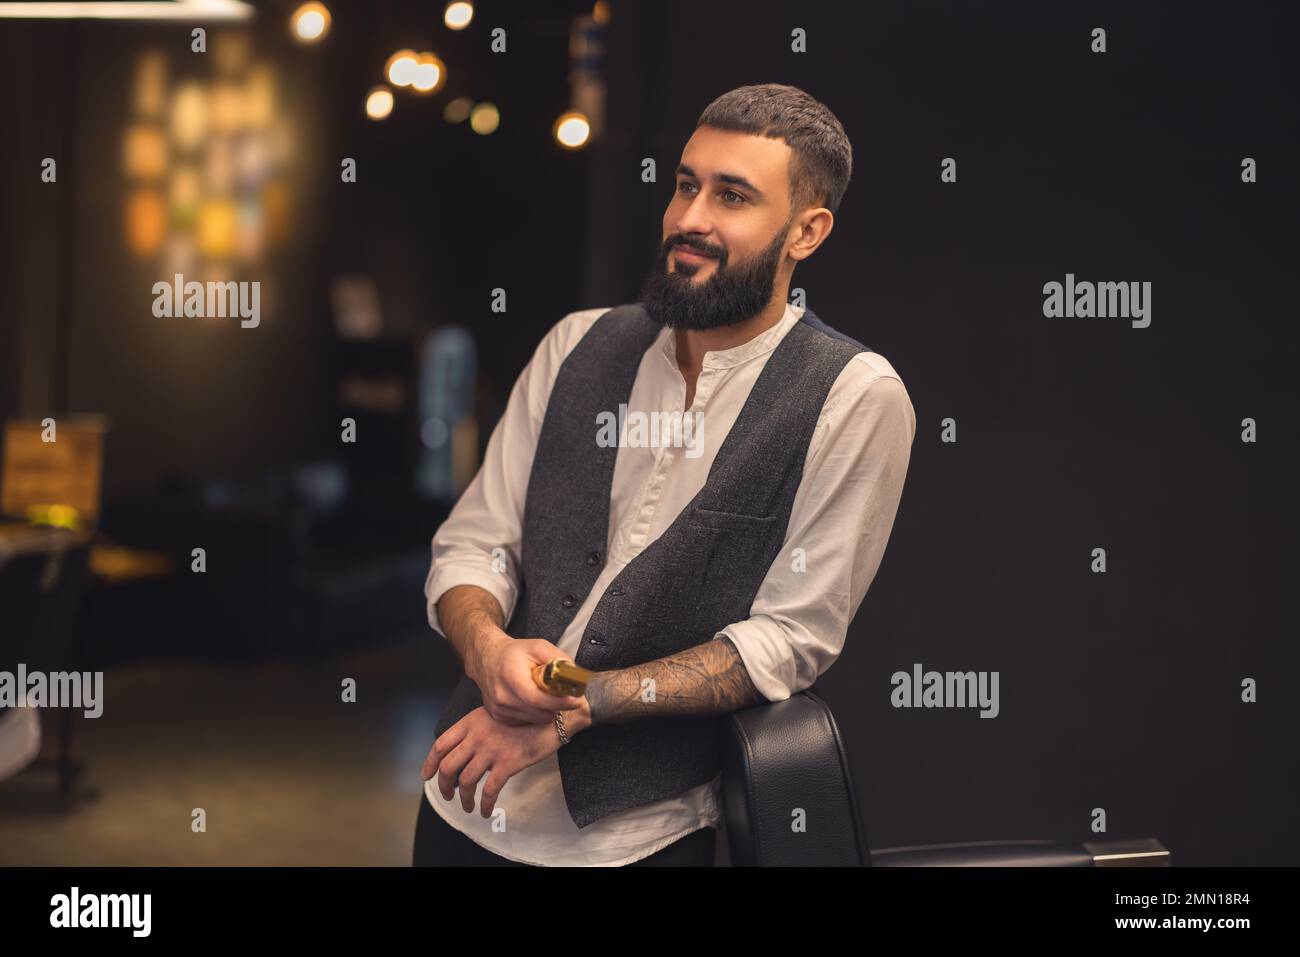 Jeune homme à barbe dans un salon de coiffure Banque D'Images